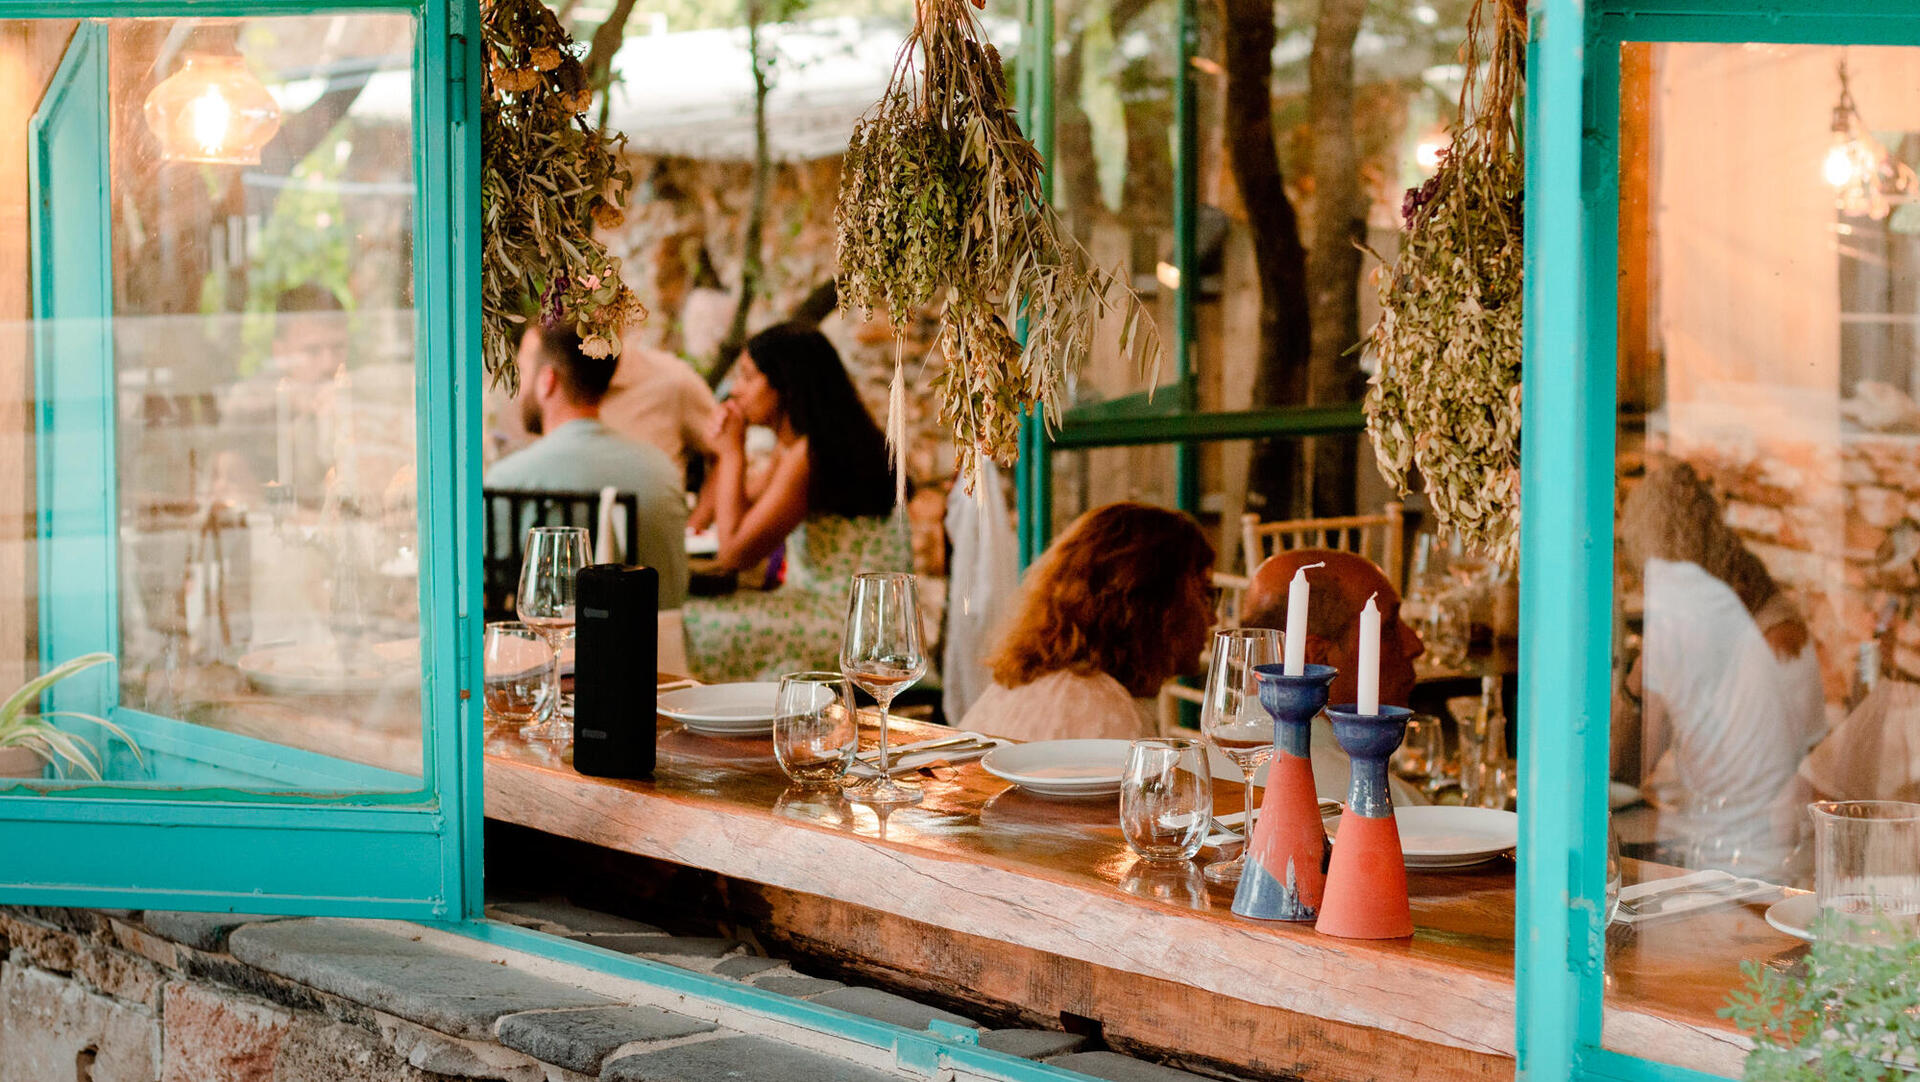 פנאי טרטוריה מקומית מסעדה גלילית מושב שמורה על גבול לבנון שף שפים אורי צור ו עמית אמיר